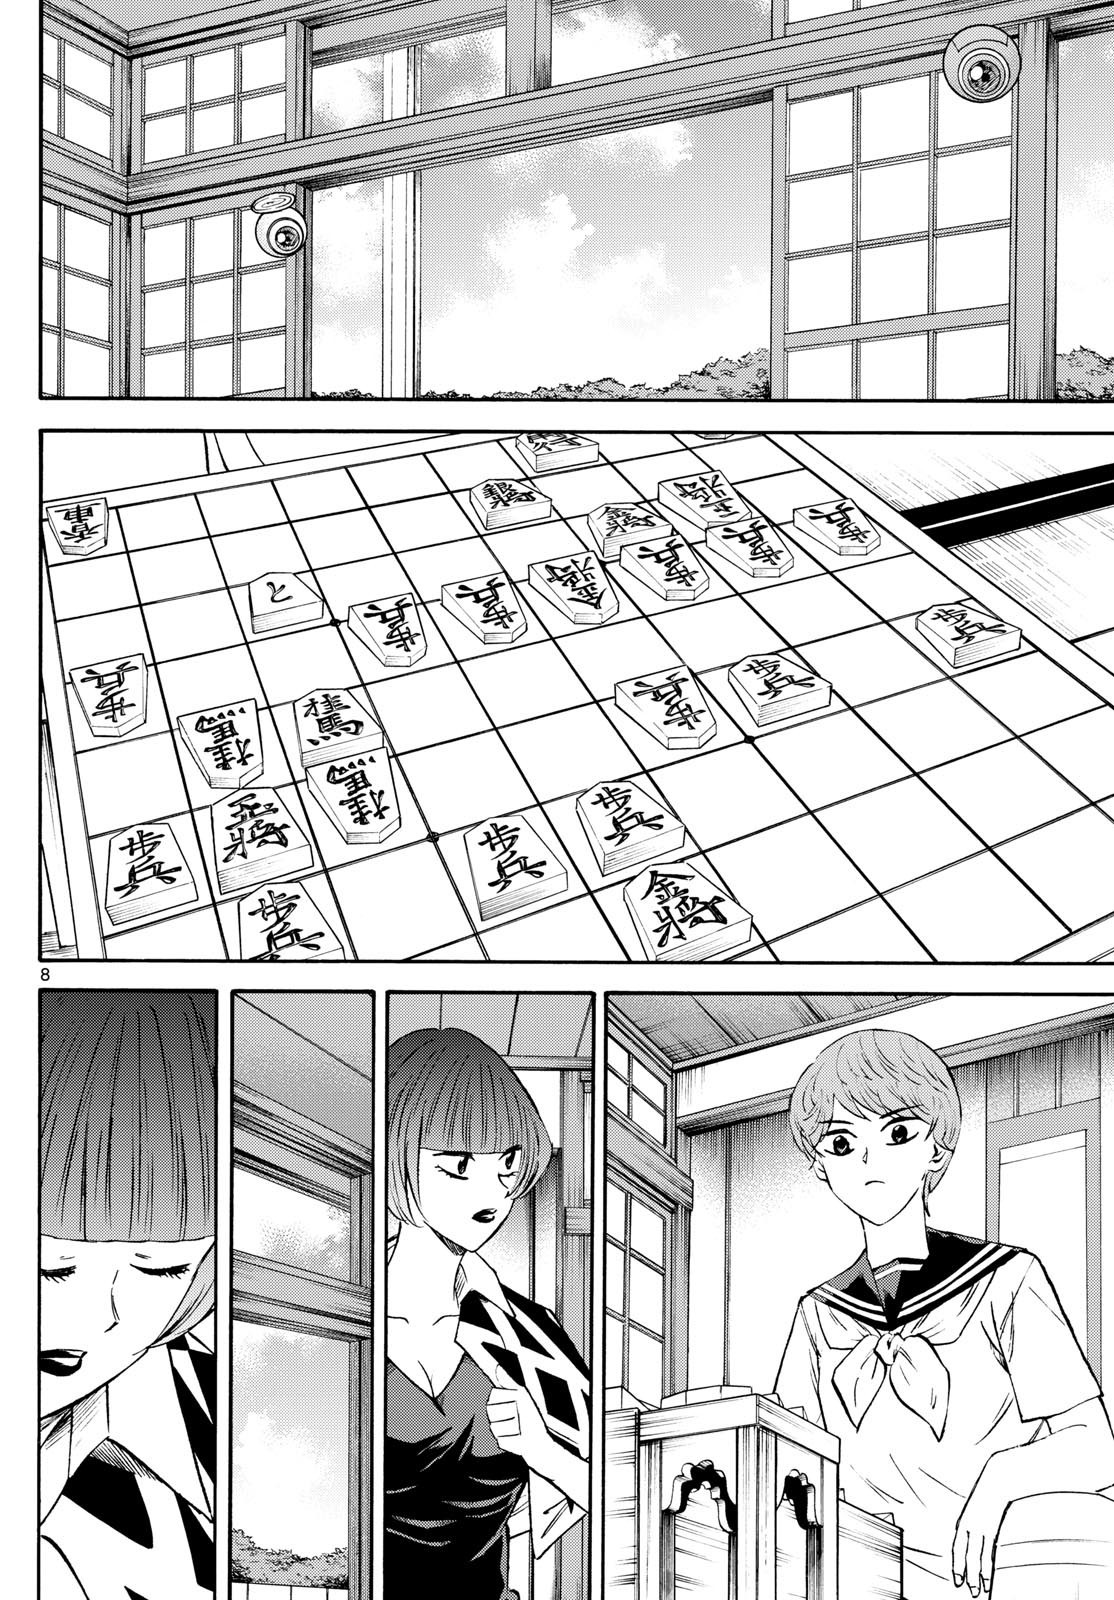 Ryu-to-Ichigo - Chapter 201 - Page 8